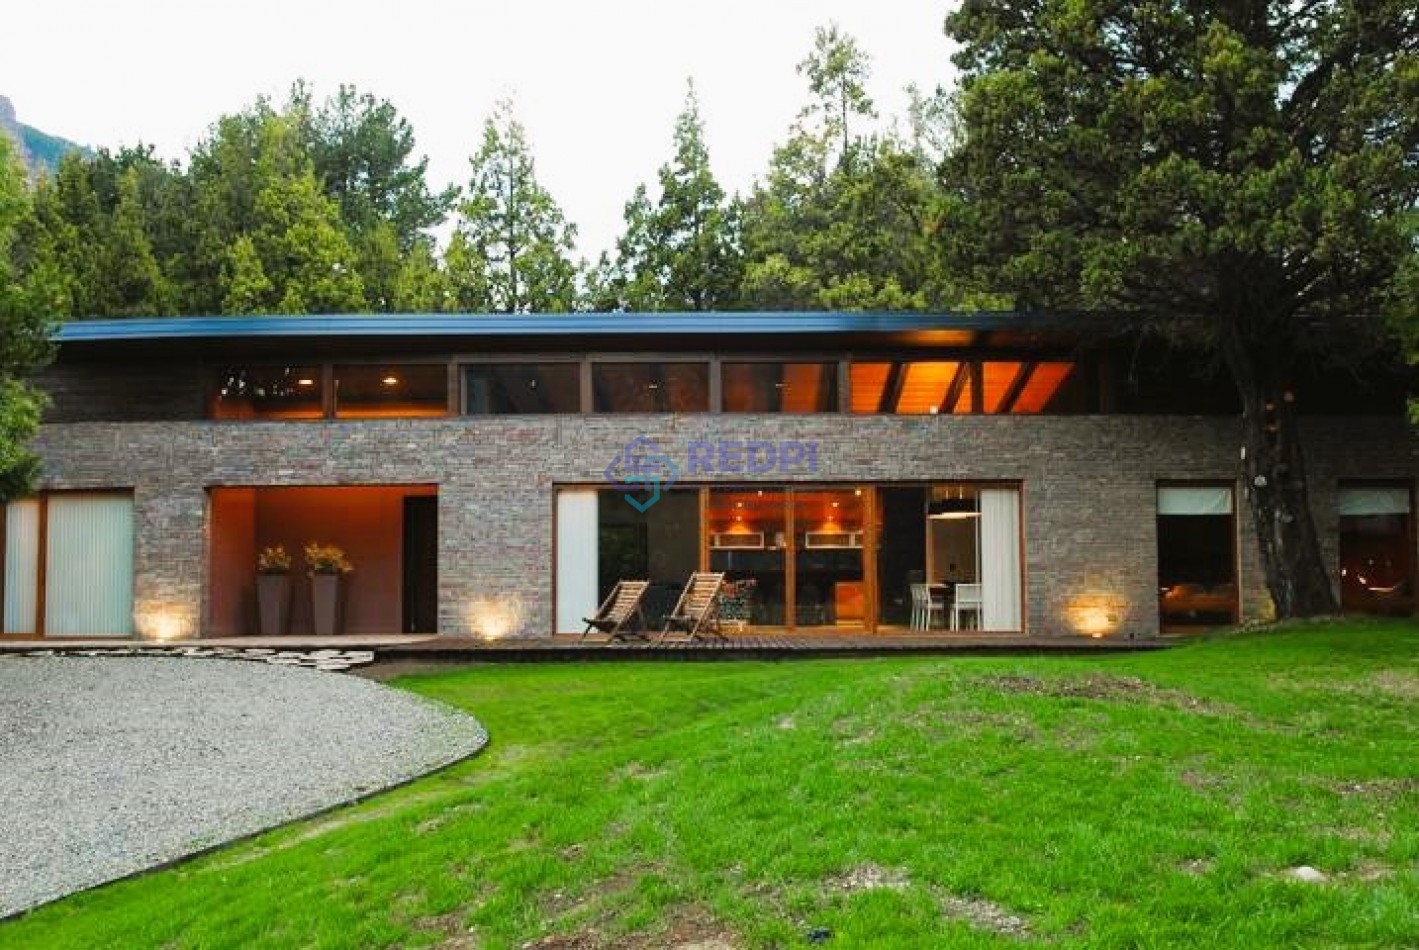 Amplia casa de moderno diseño en Country Arelauquen.